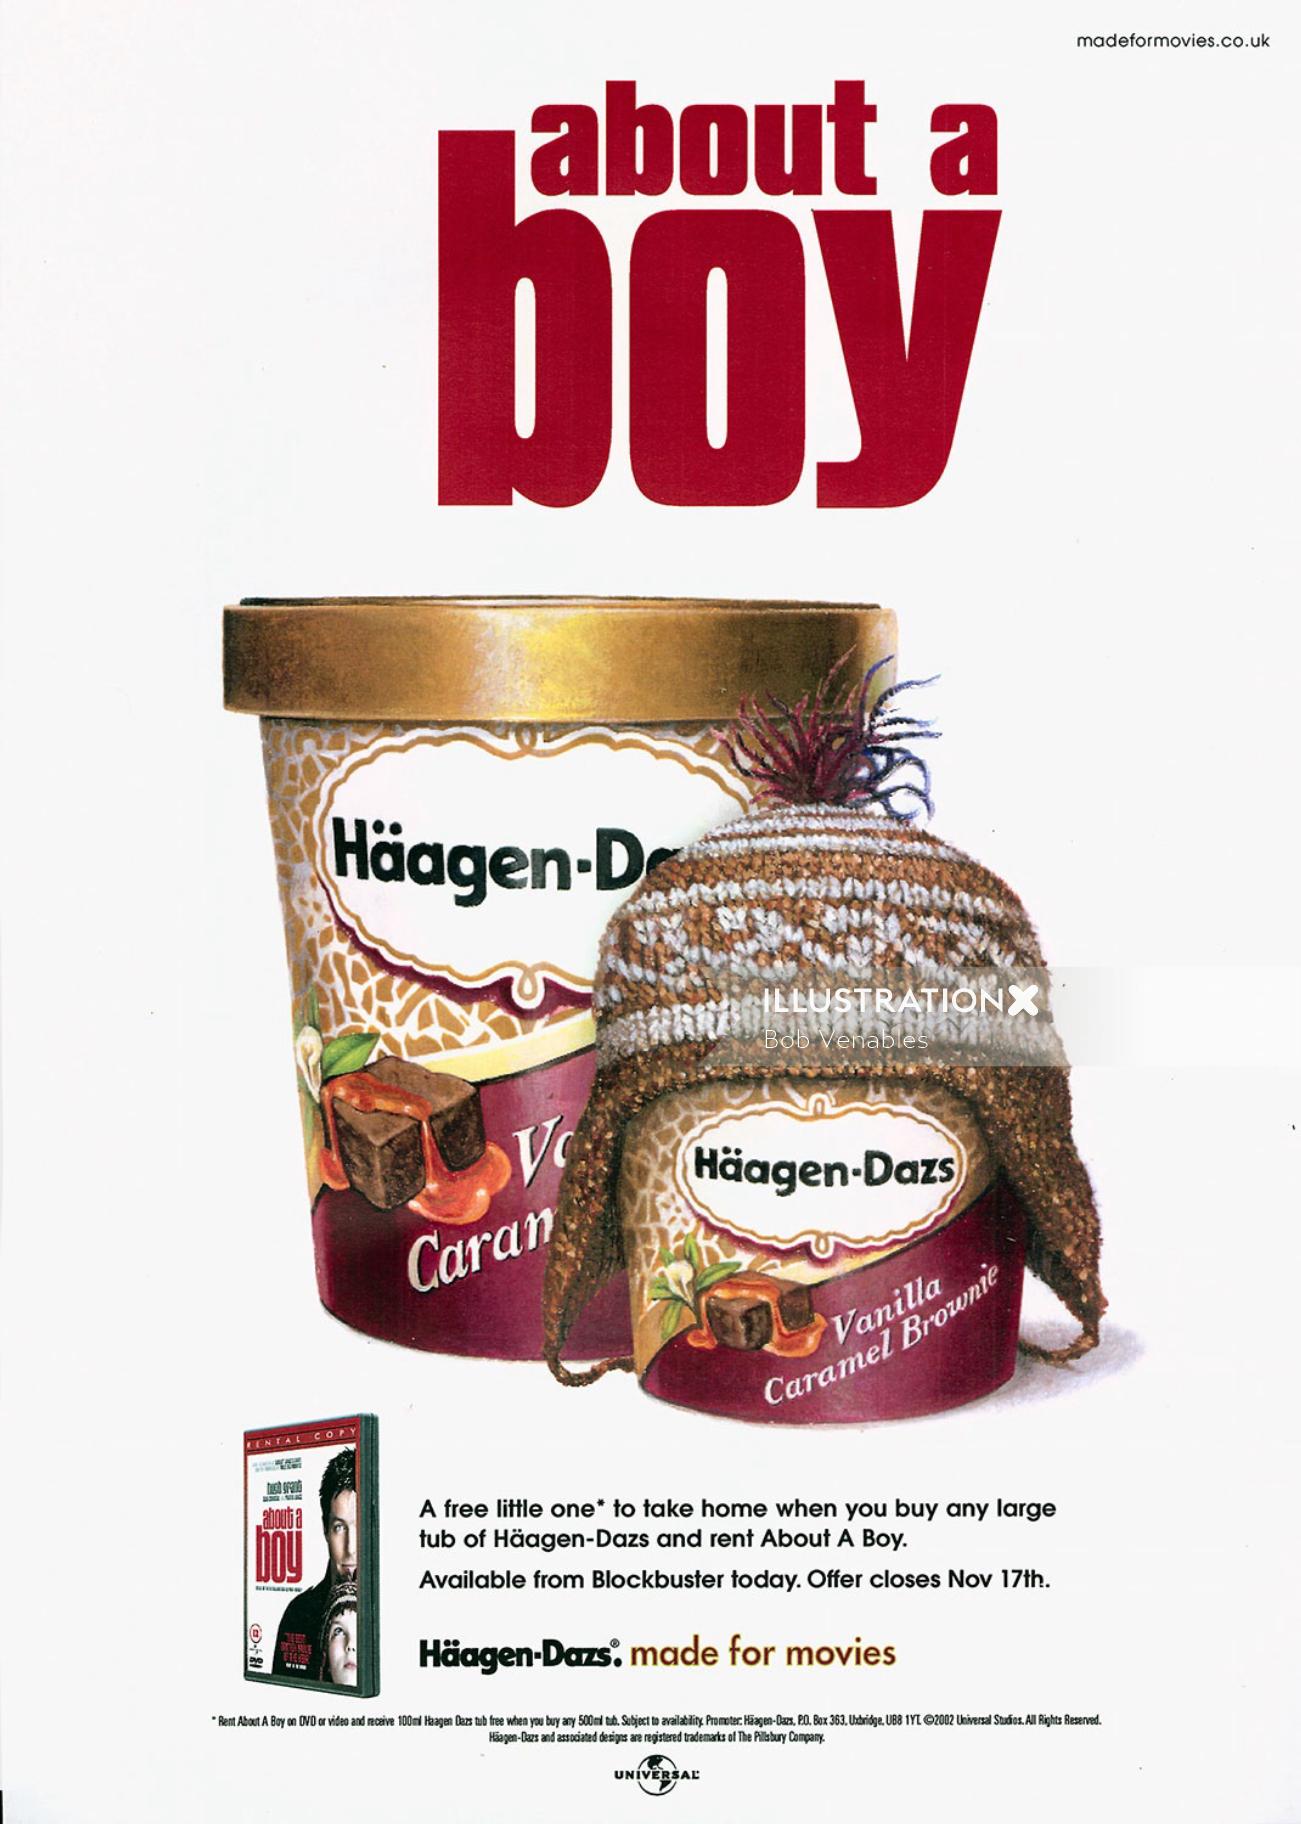 Emballage de Haagen-Dazs Vanille Caramel Brownie